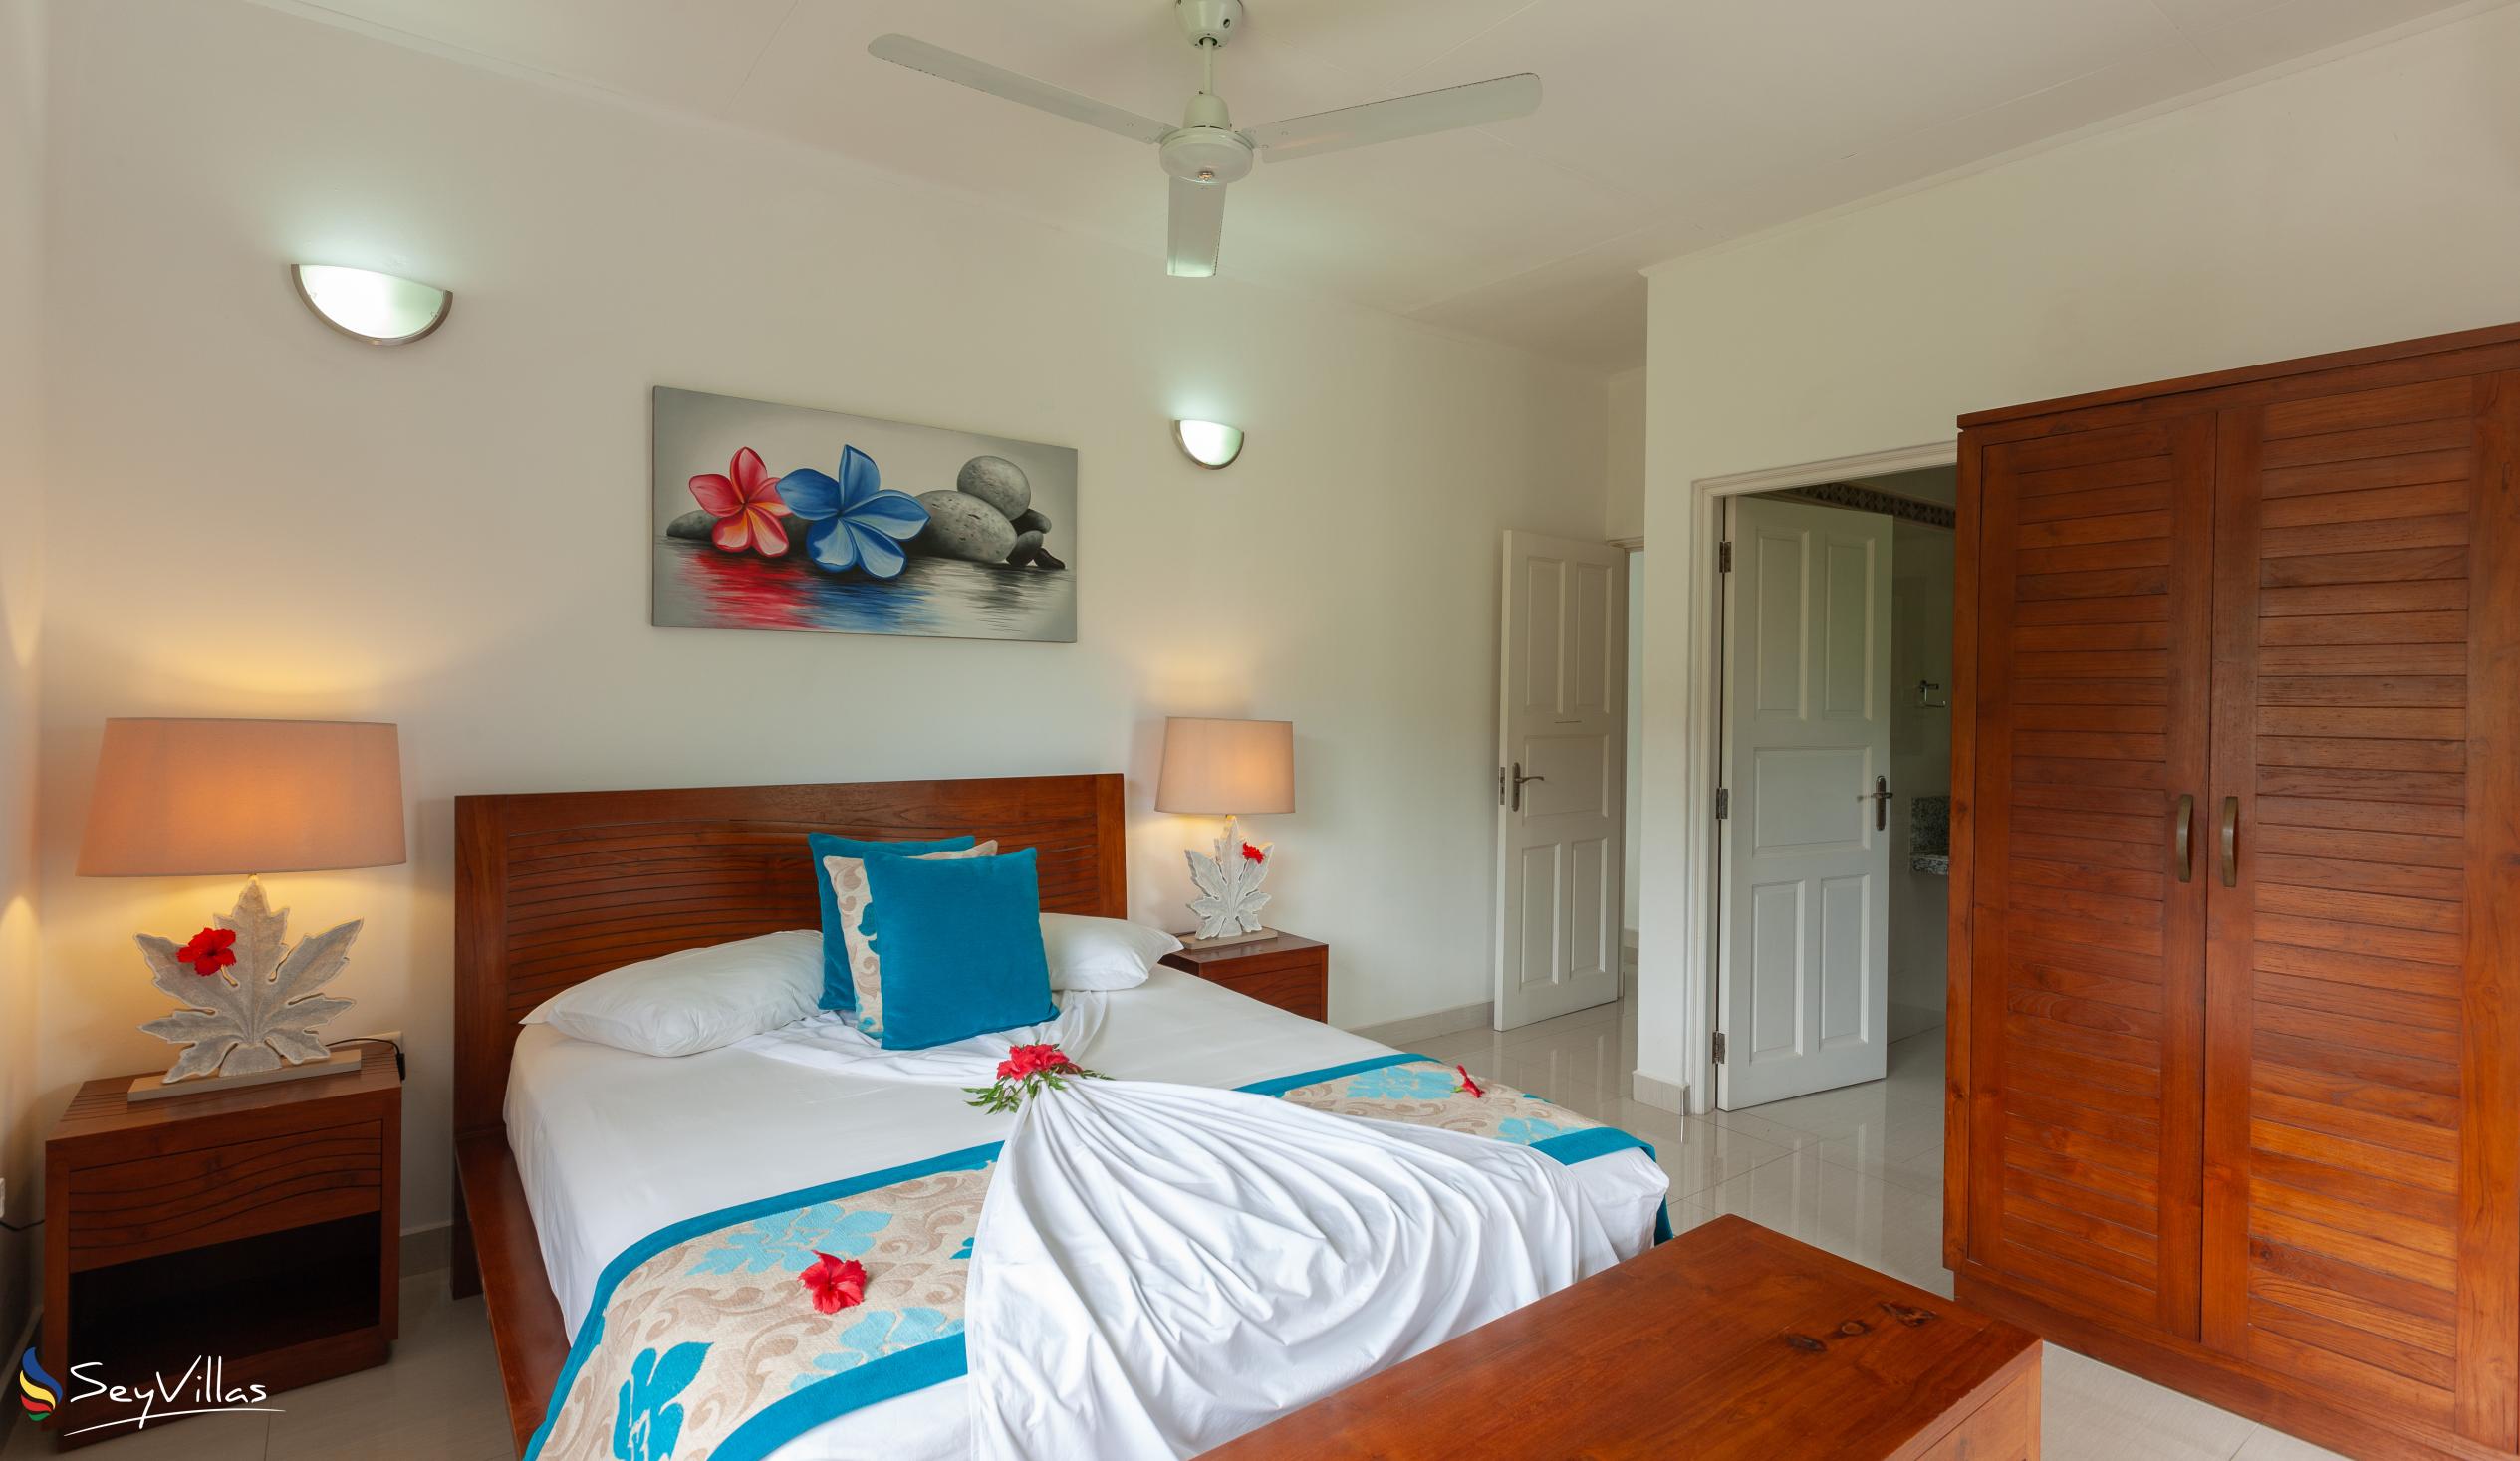 Photo 36: Casa Tara Villas - 2-Bedroom Apartment - Praslin (Seychelles)